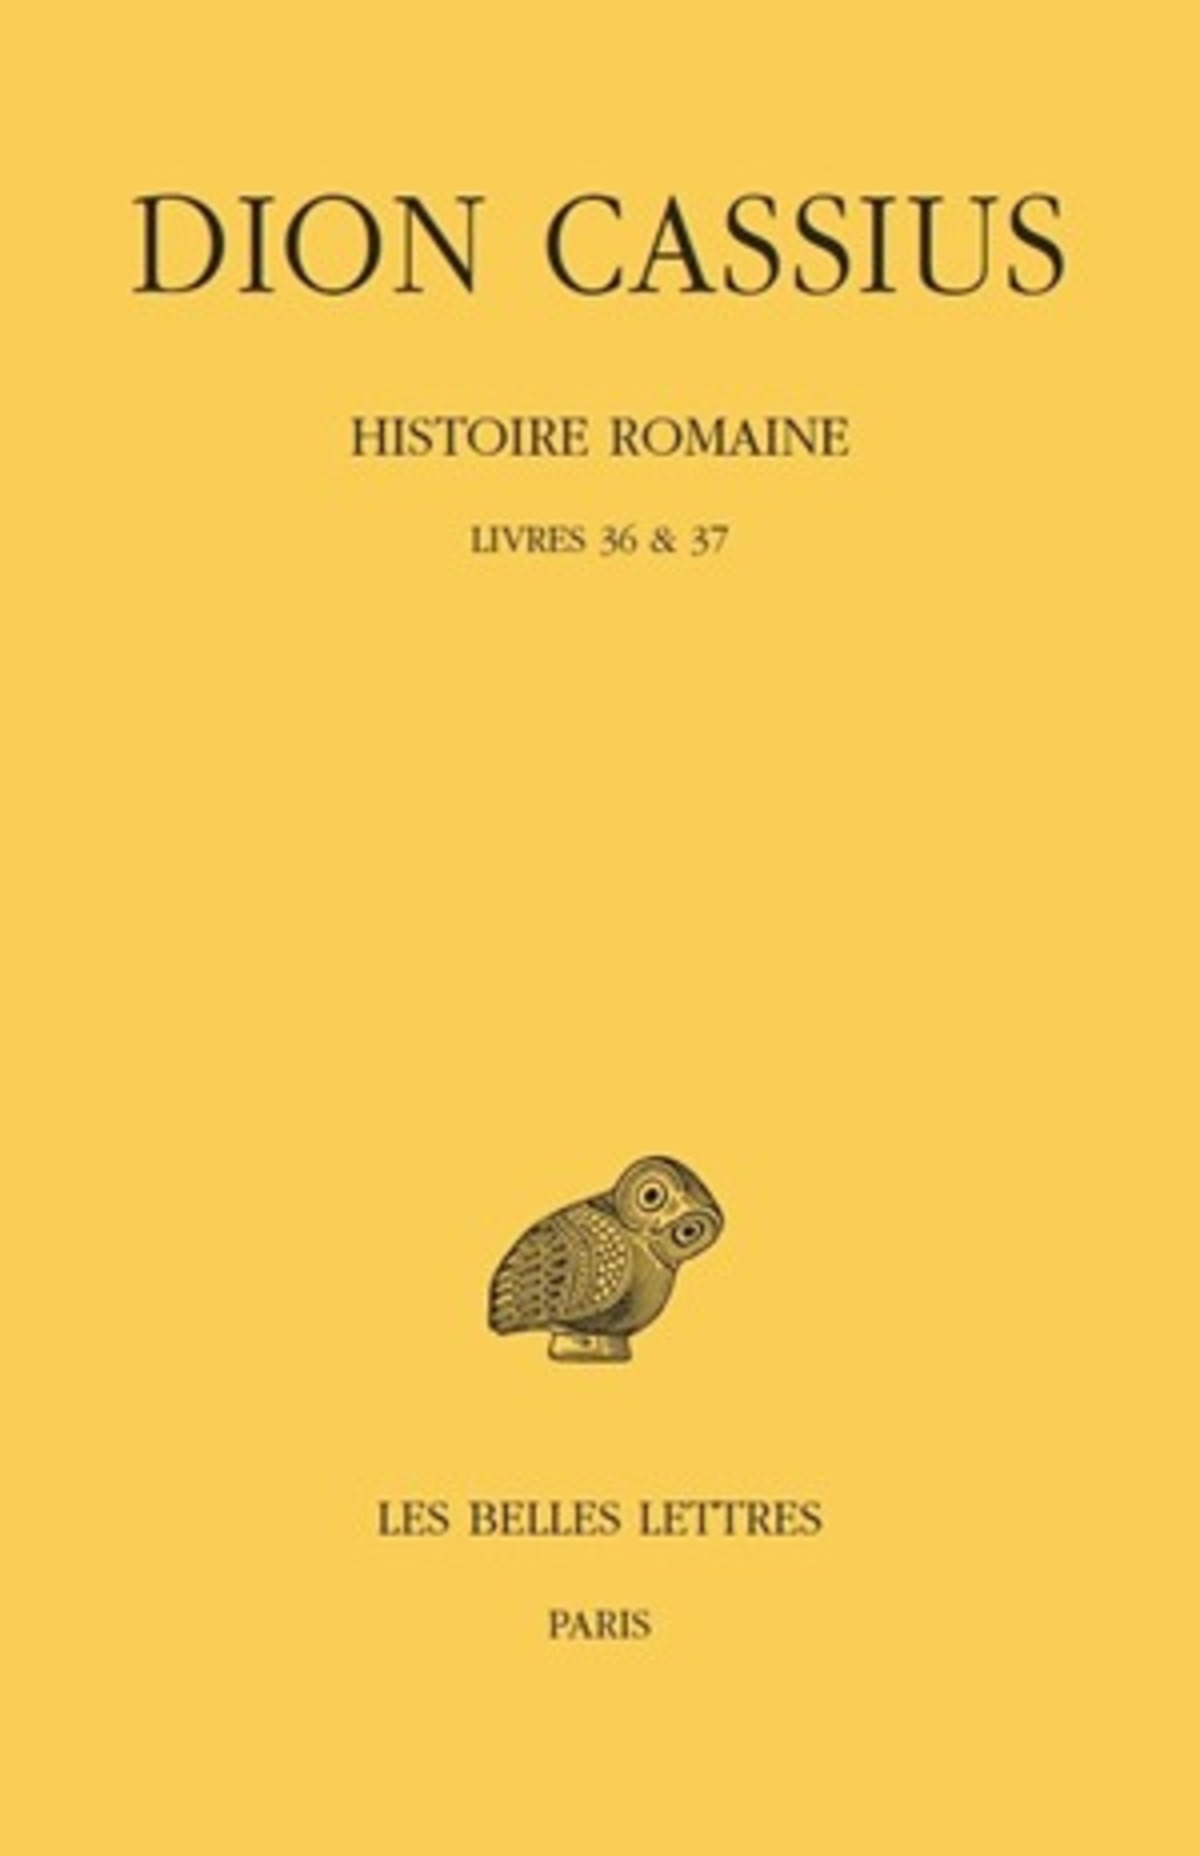 Histoire romaine. Livres 36 & 37